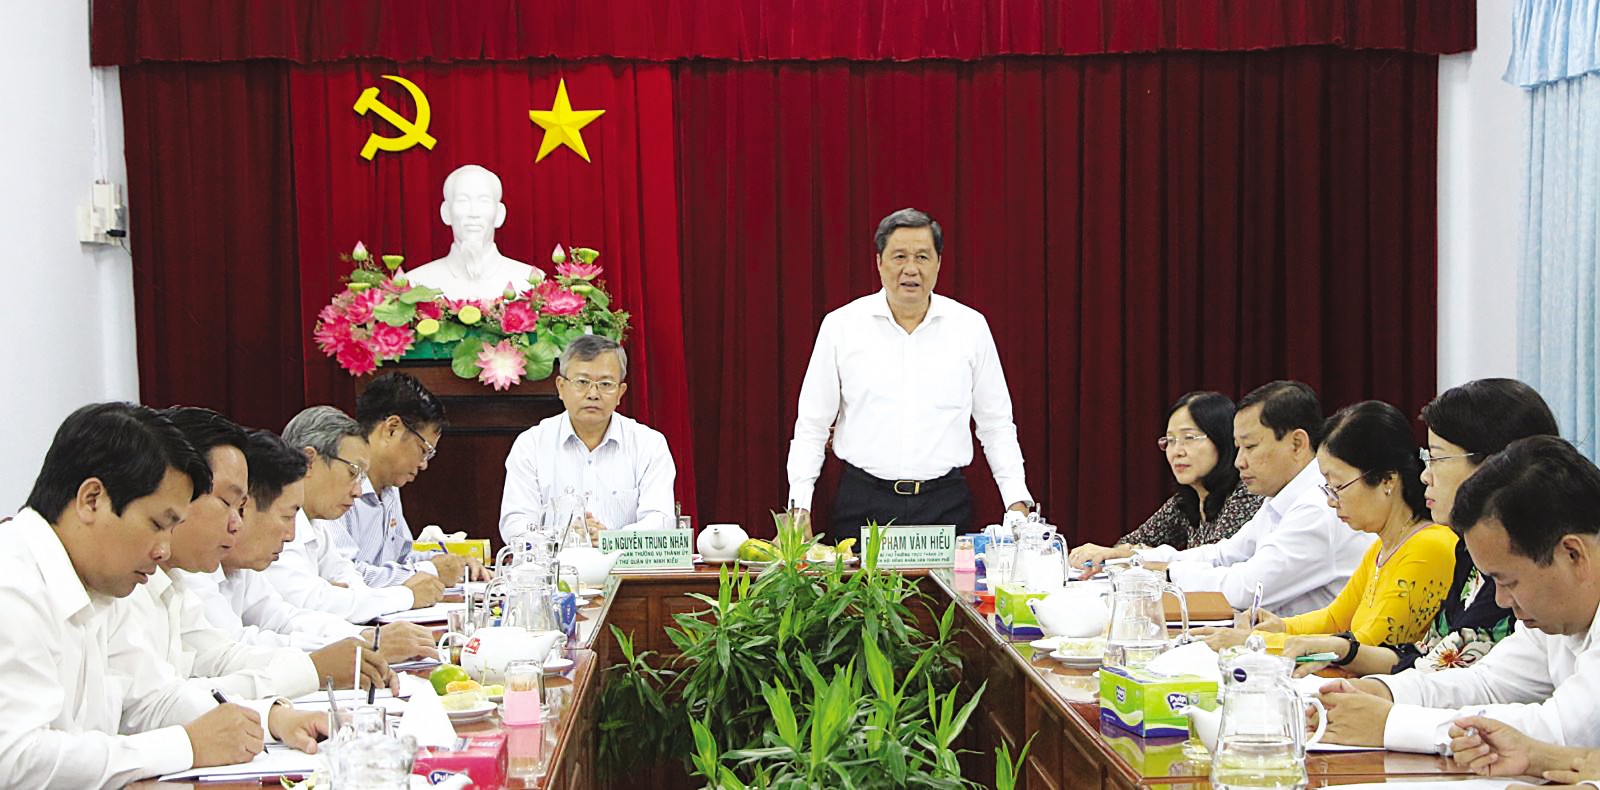 Đồng chí Phạm Văn Hiểu phát biểu chỉ đạo tại buổi giám sát Ban Thường vụ Quận ủy Ninh Kiều. Ảnh: Ngọc Quyên